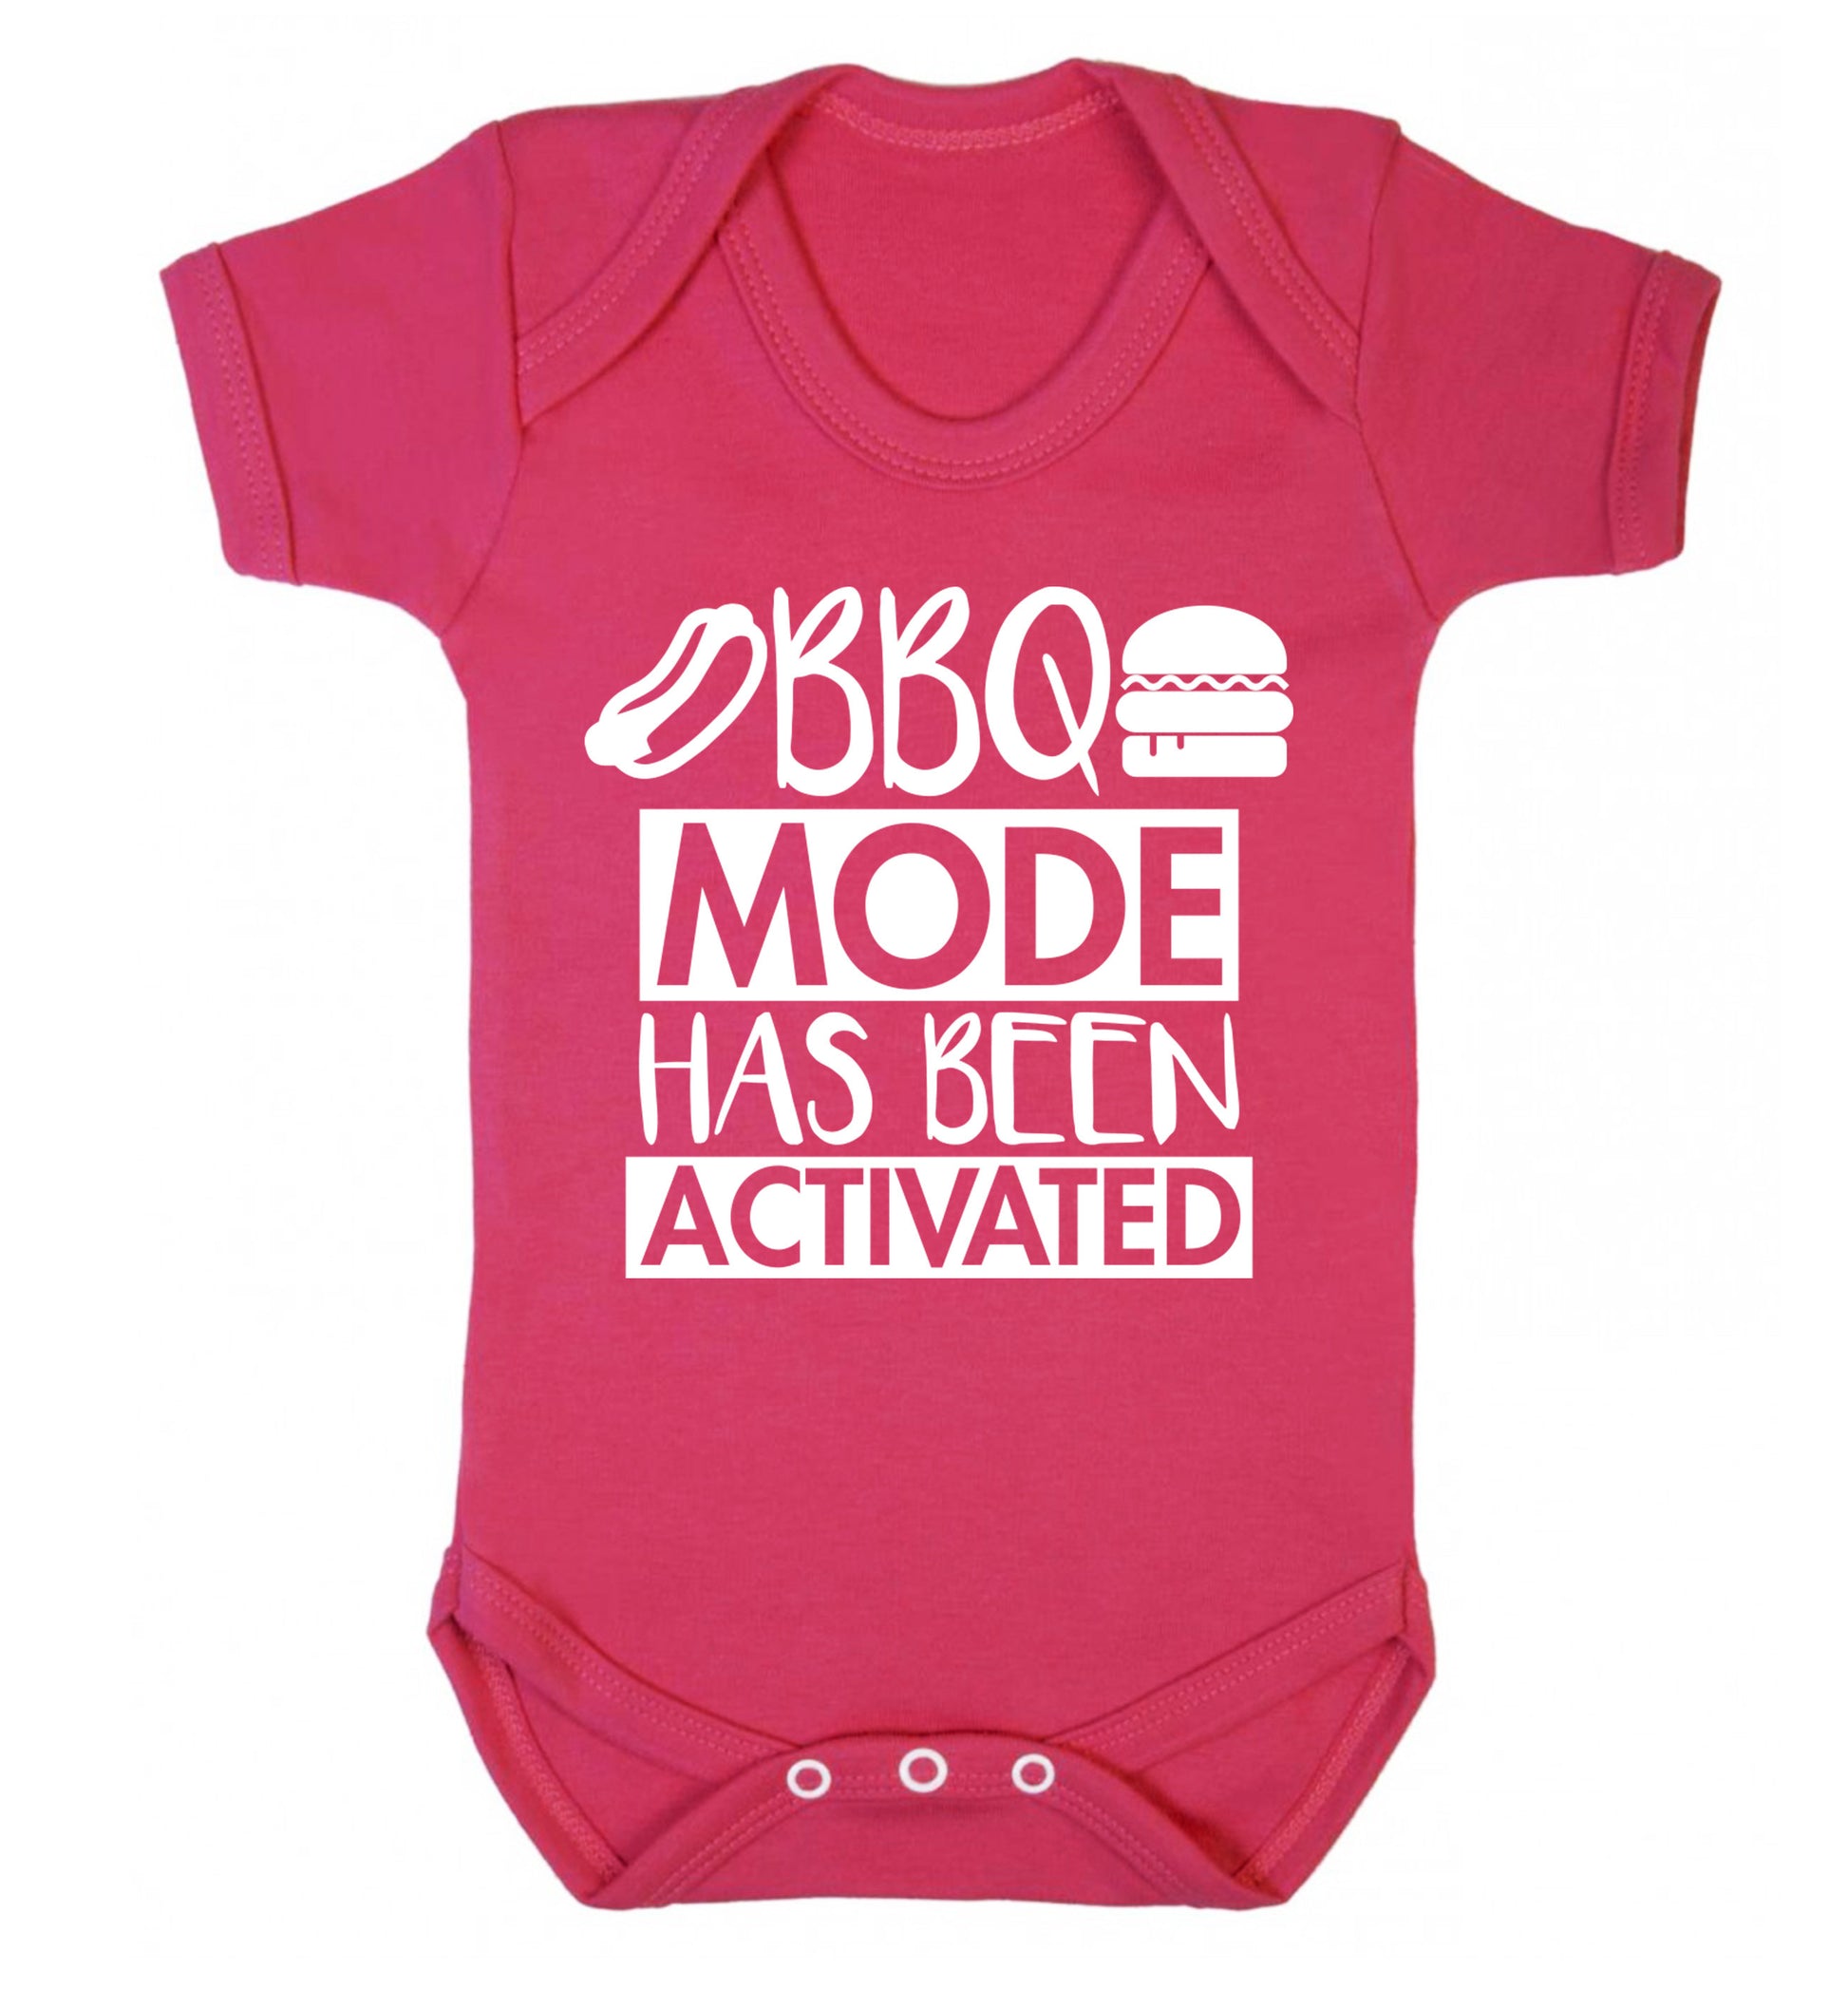 Bbq mode has been activated Baby Vest dark pink 18-24 months